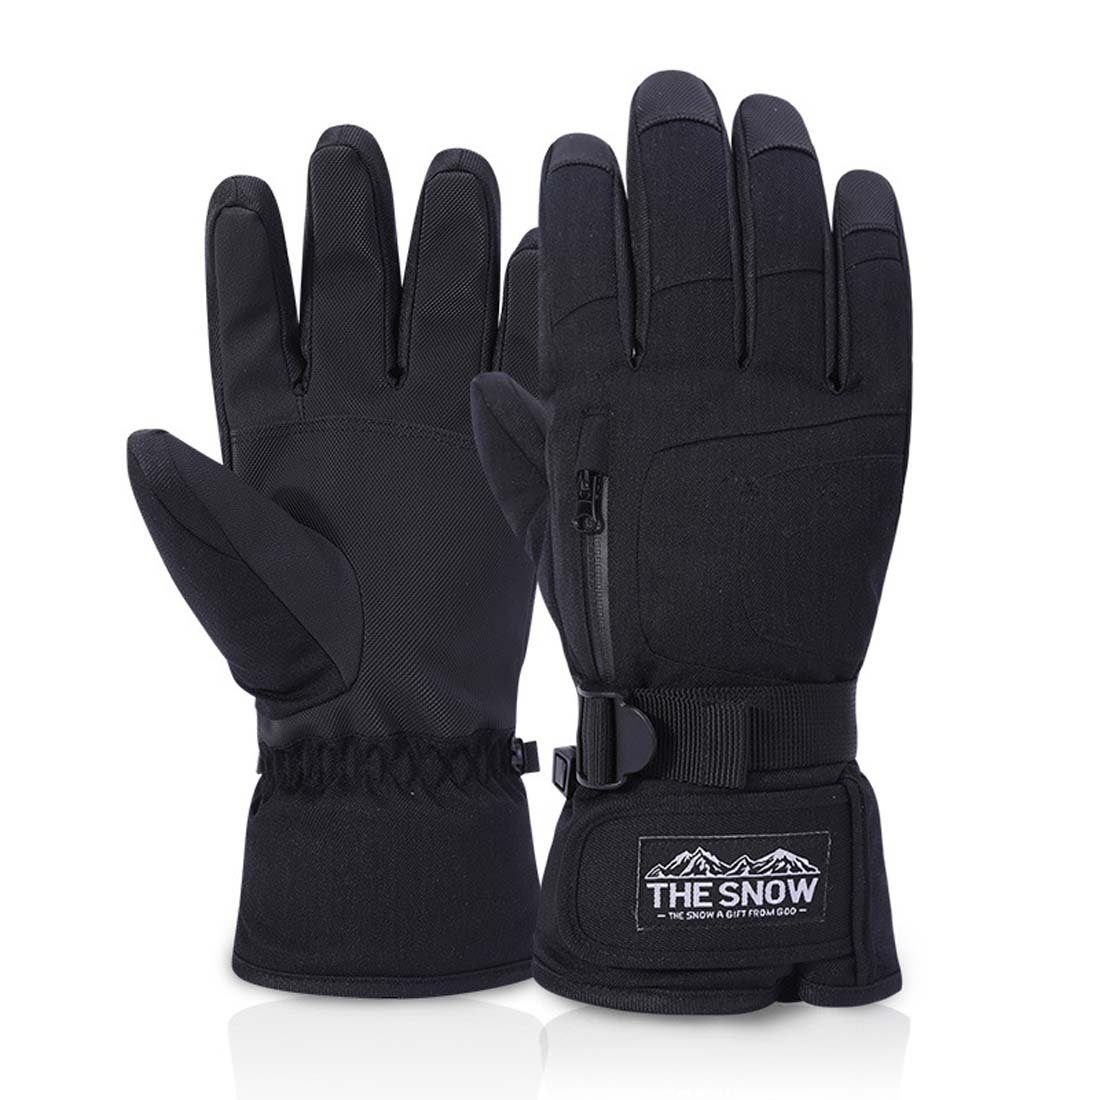 FIDDY Skihandschuhe Winterwarme winddichte Handschuhe für Männer und Frauen. (geeignet zum Skifahren, Radfahren, Motorradfahren, Laufen) wasserdichte Handschuhe, Touchscreen-Skihandschuhe